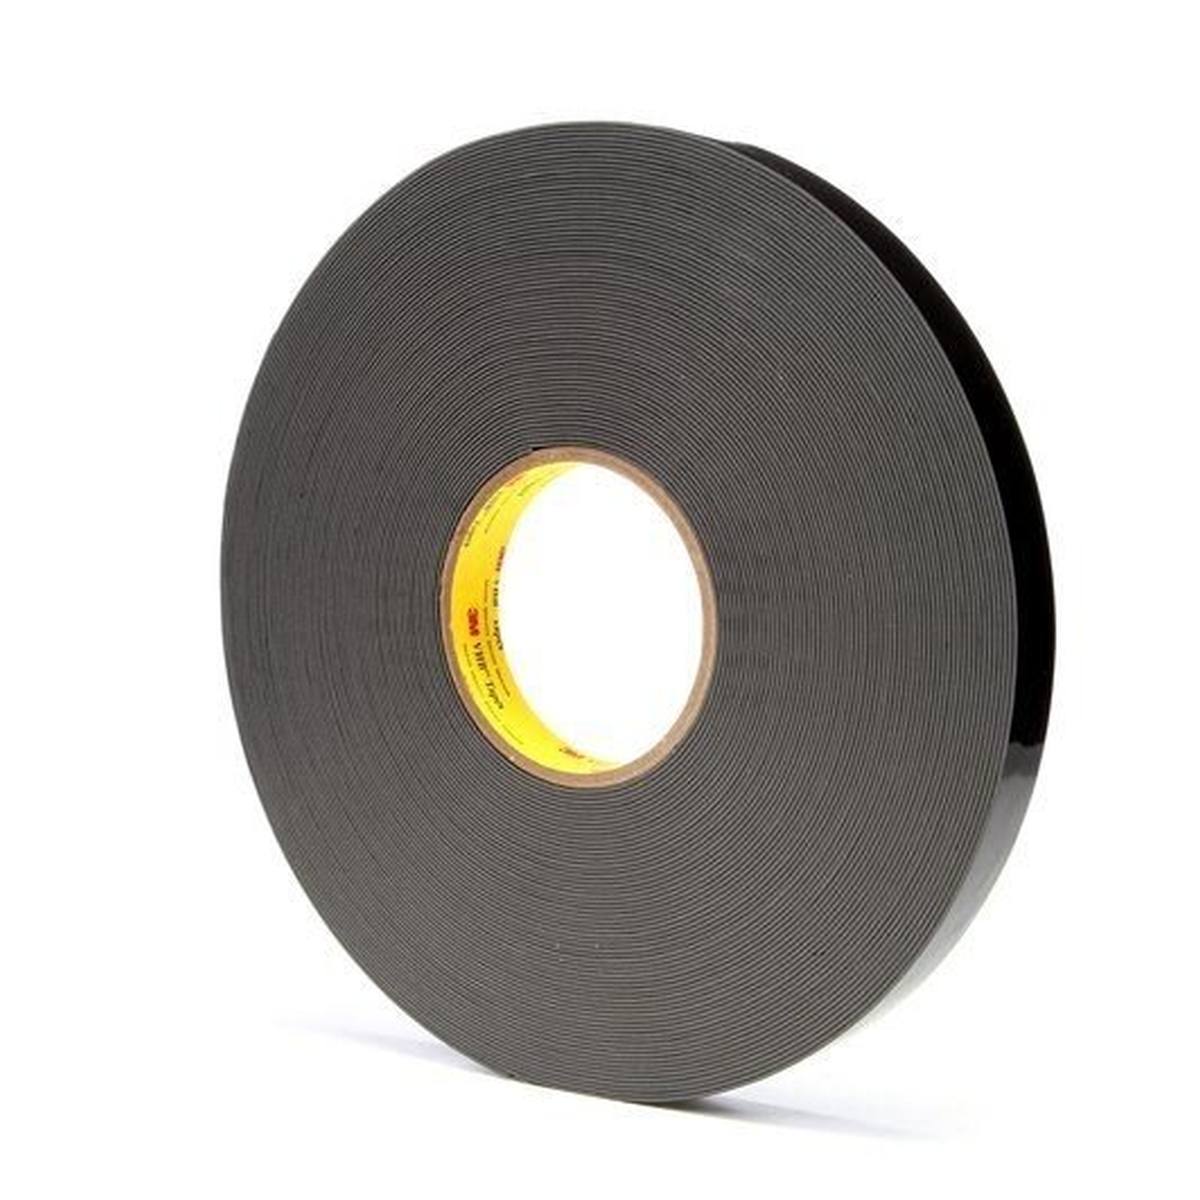 3M VHB adhesive tape 4929F, black, 9 mm x 33 m, 0.6 mm